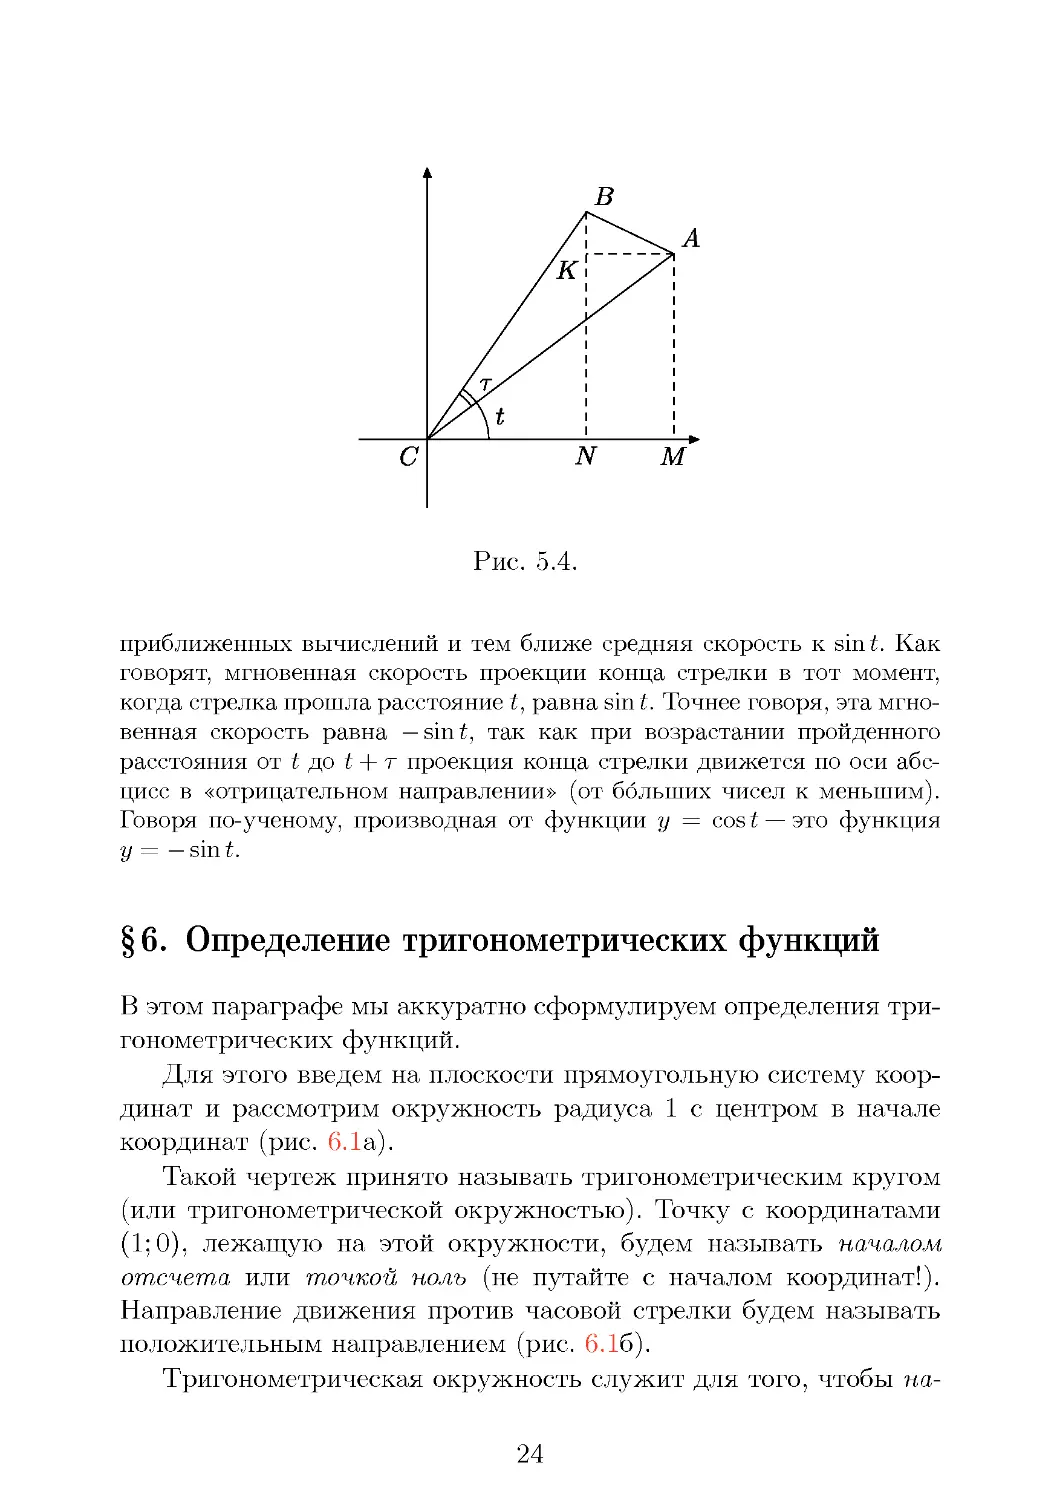 Определение тригонометрических функций